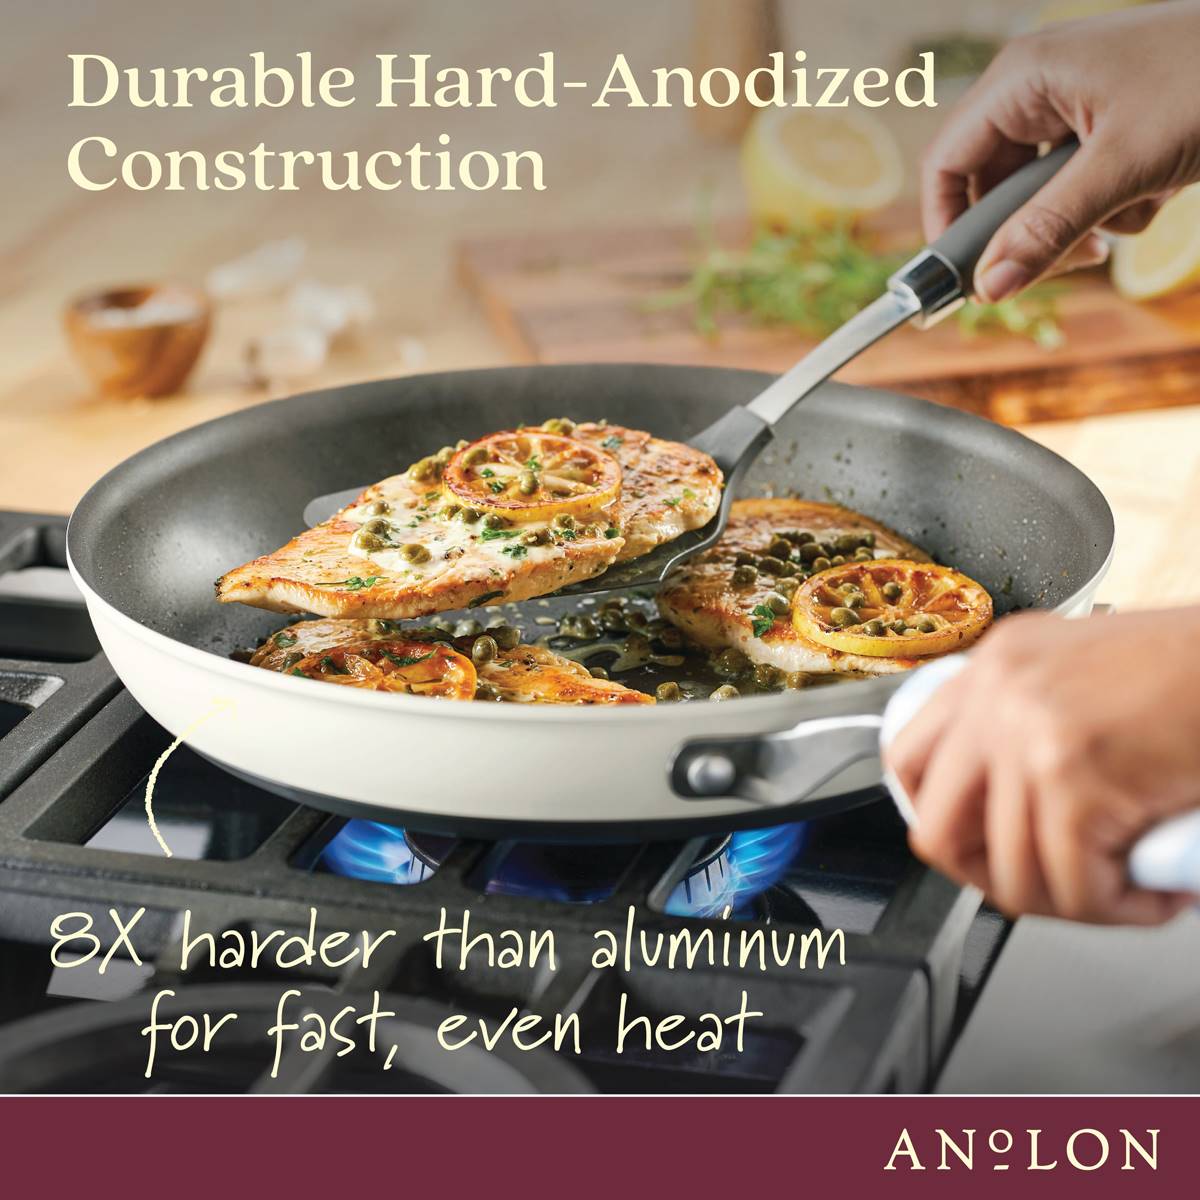 Anolon(R) Achieve 10pc. Hard Anodized Nonstick Cookware Set